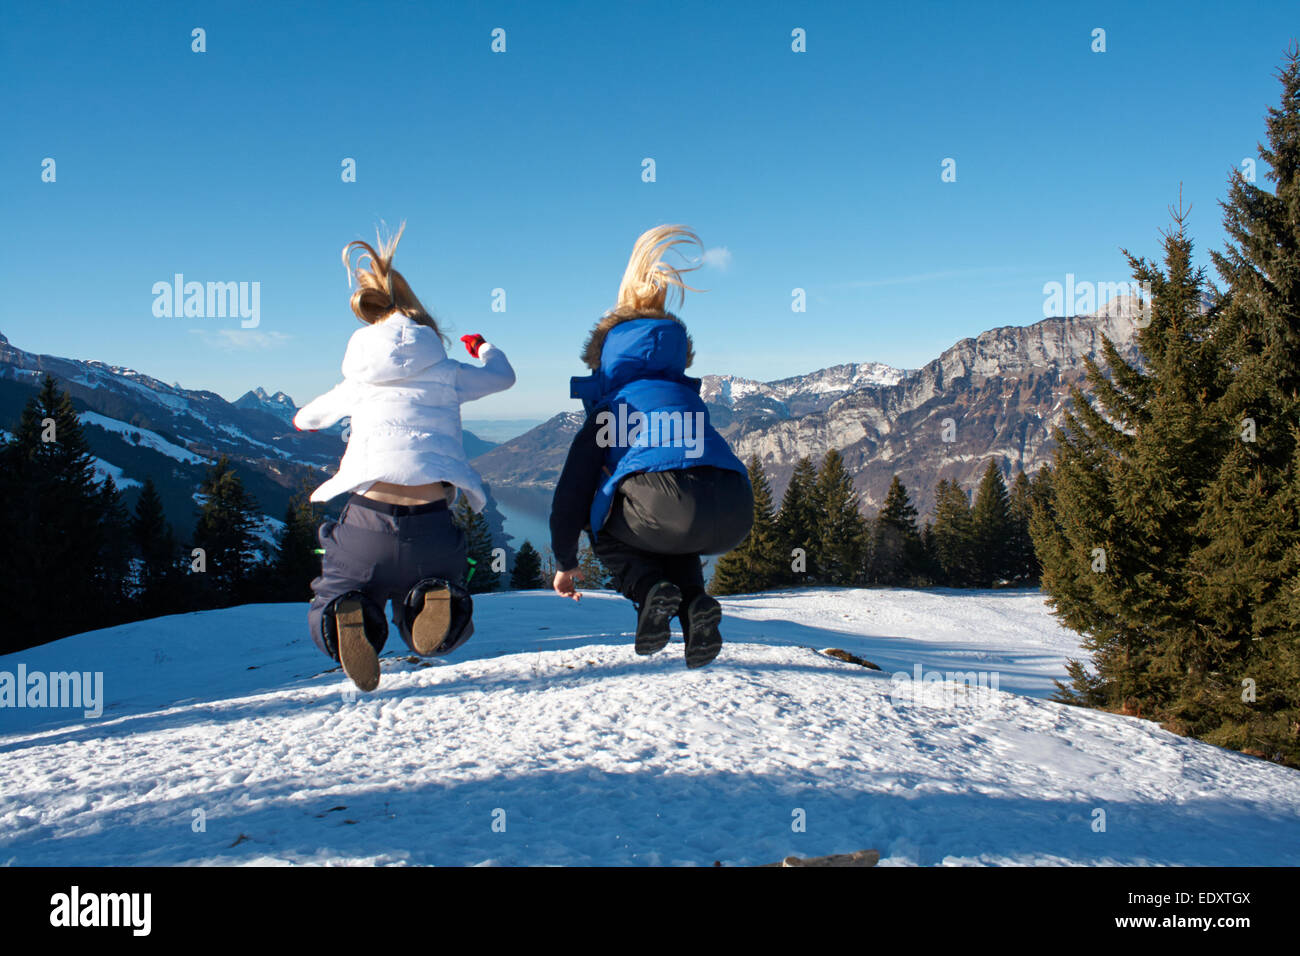 zwei Teenager blonden Haaren in die Luft springen auf einen Skiurlaub in der Schweiz Stockfoto